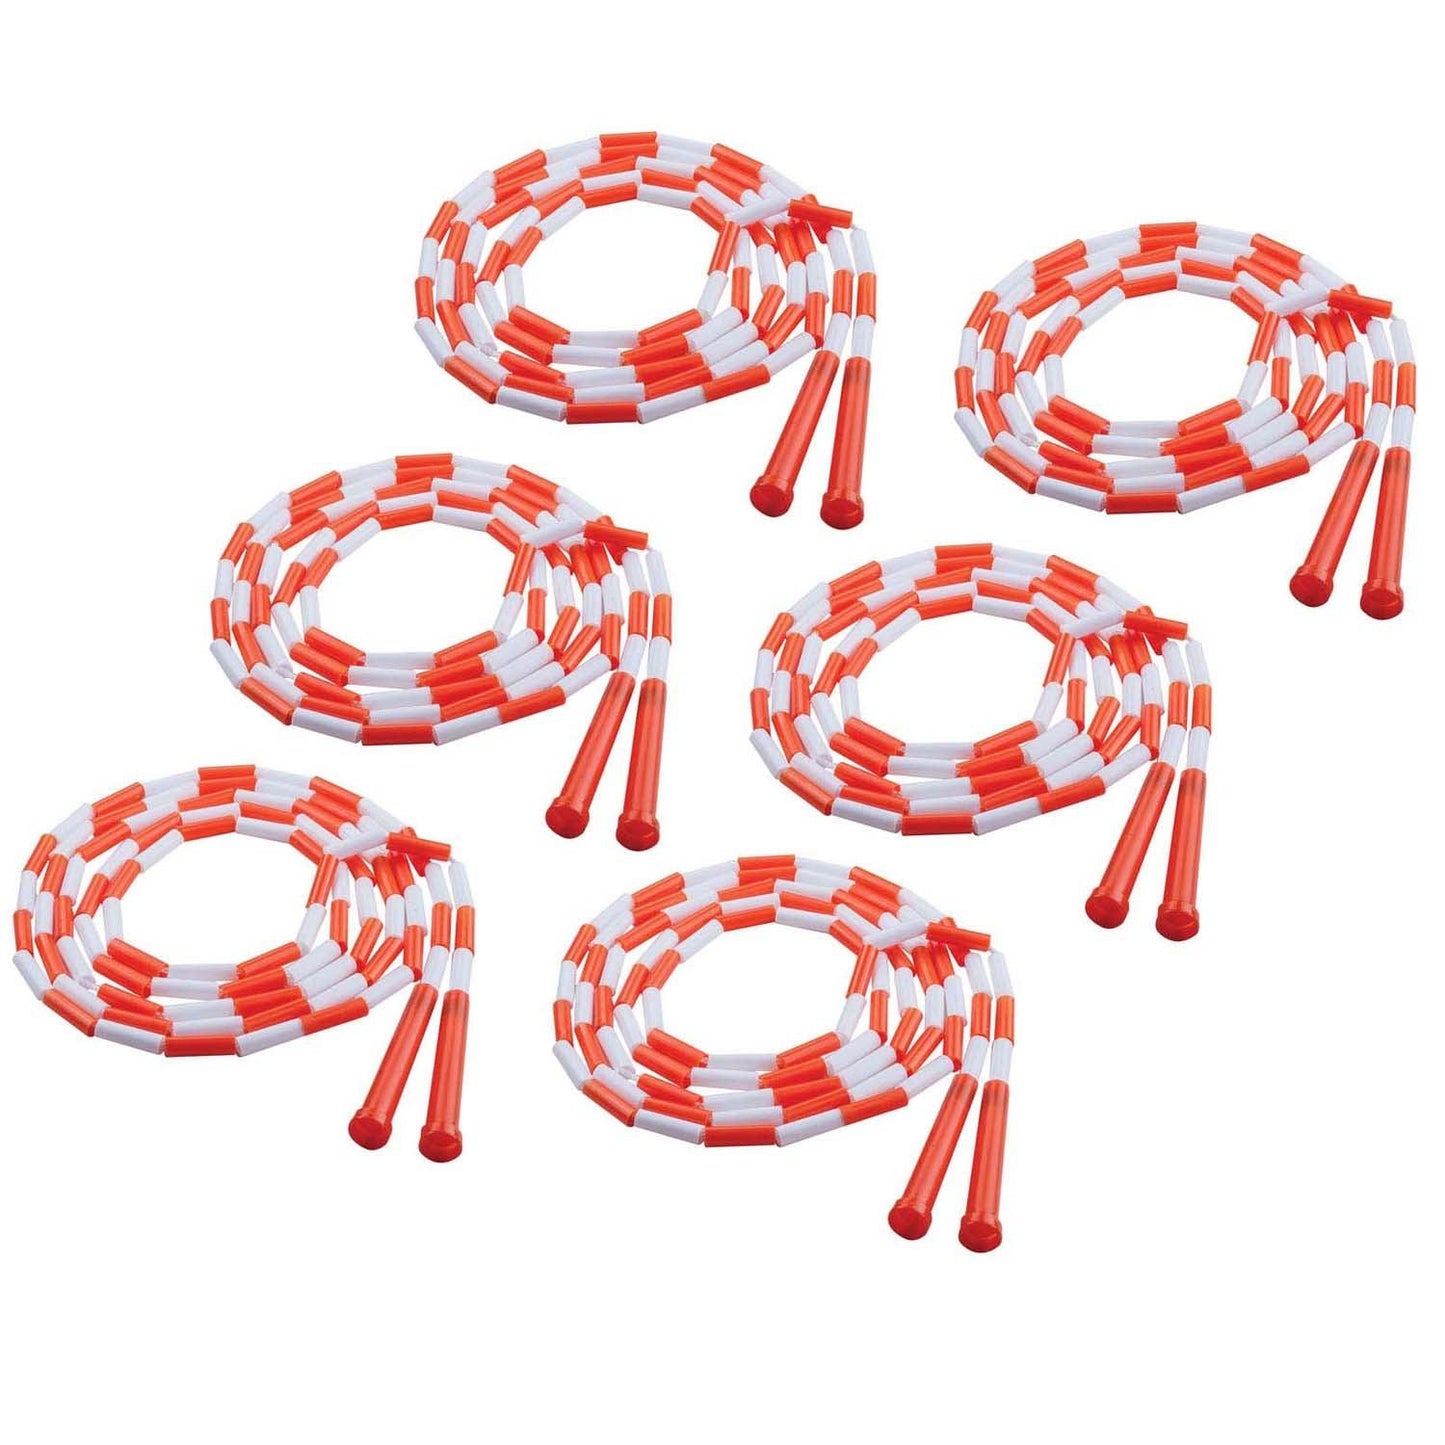 Plastic Segmented Jump Rope 10', Pack of 6 - Loomini